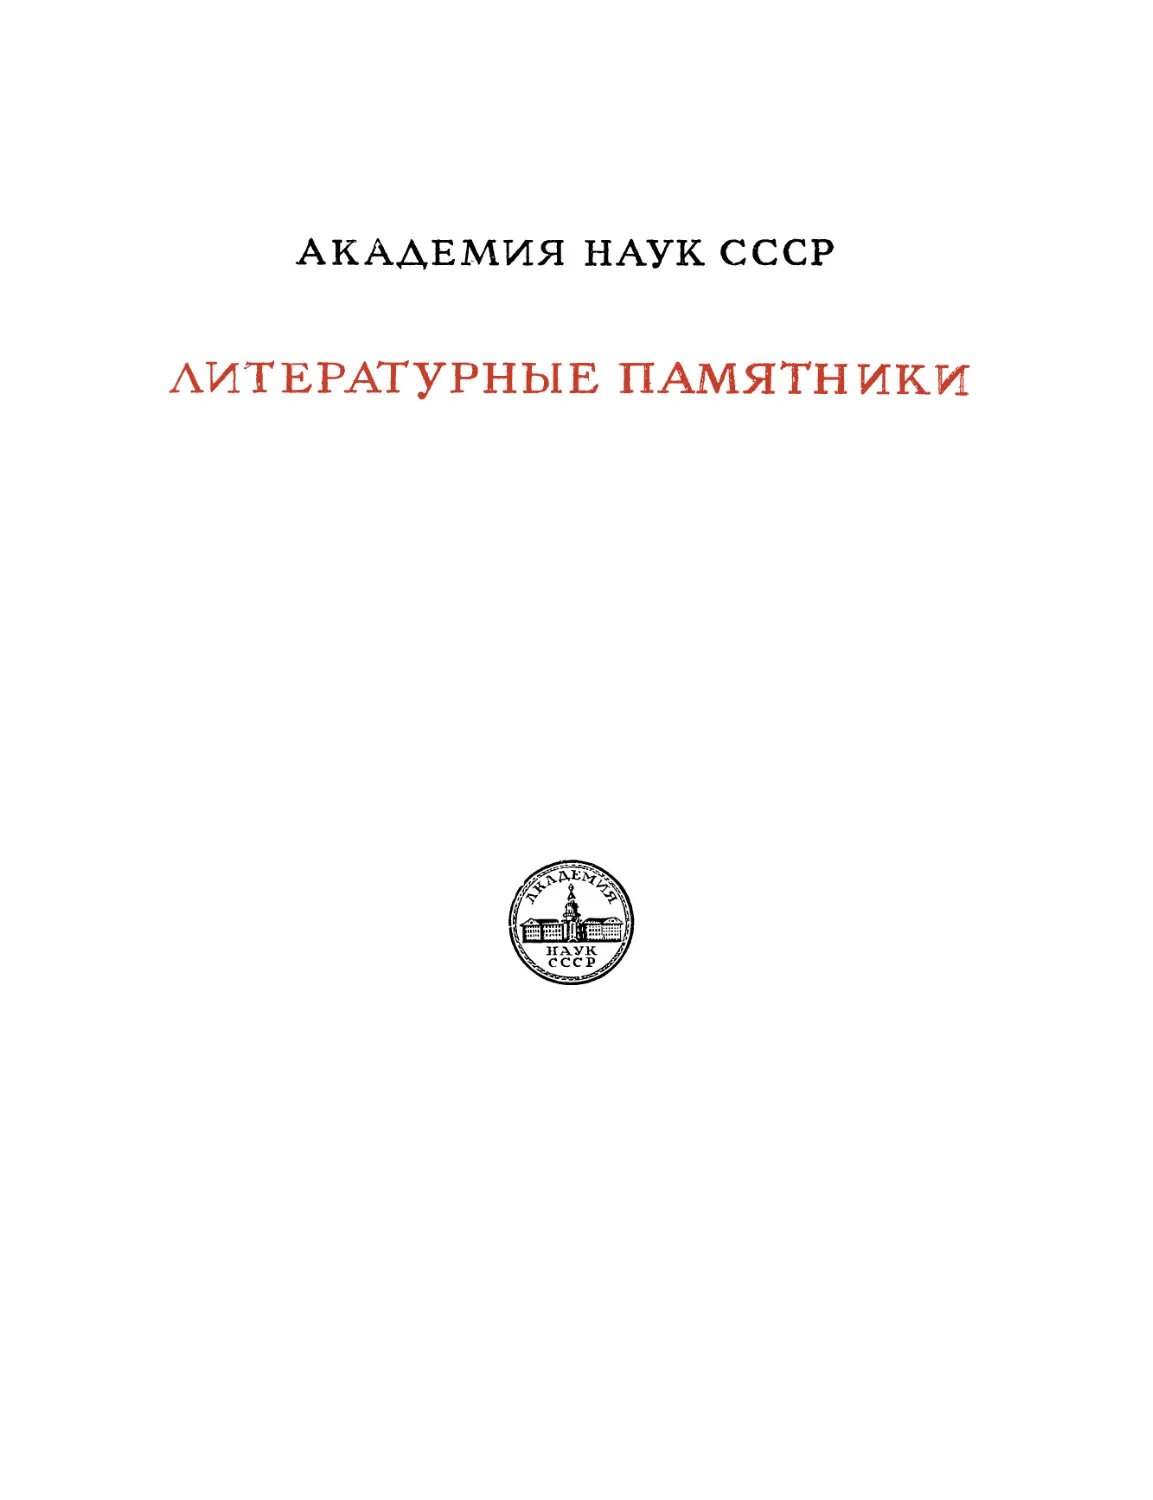 Полярная звезда, изданная А. Бестужевым и К. Рылеевым - 1960